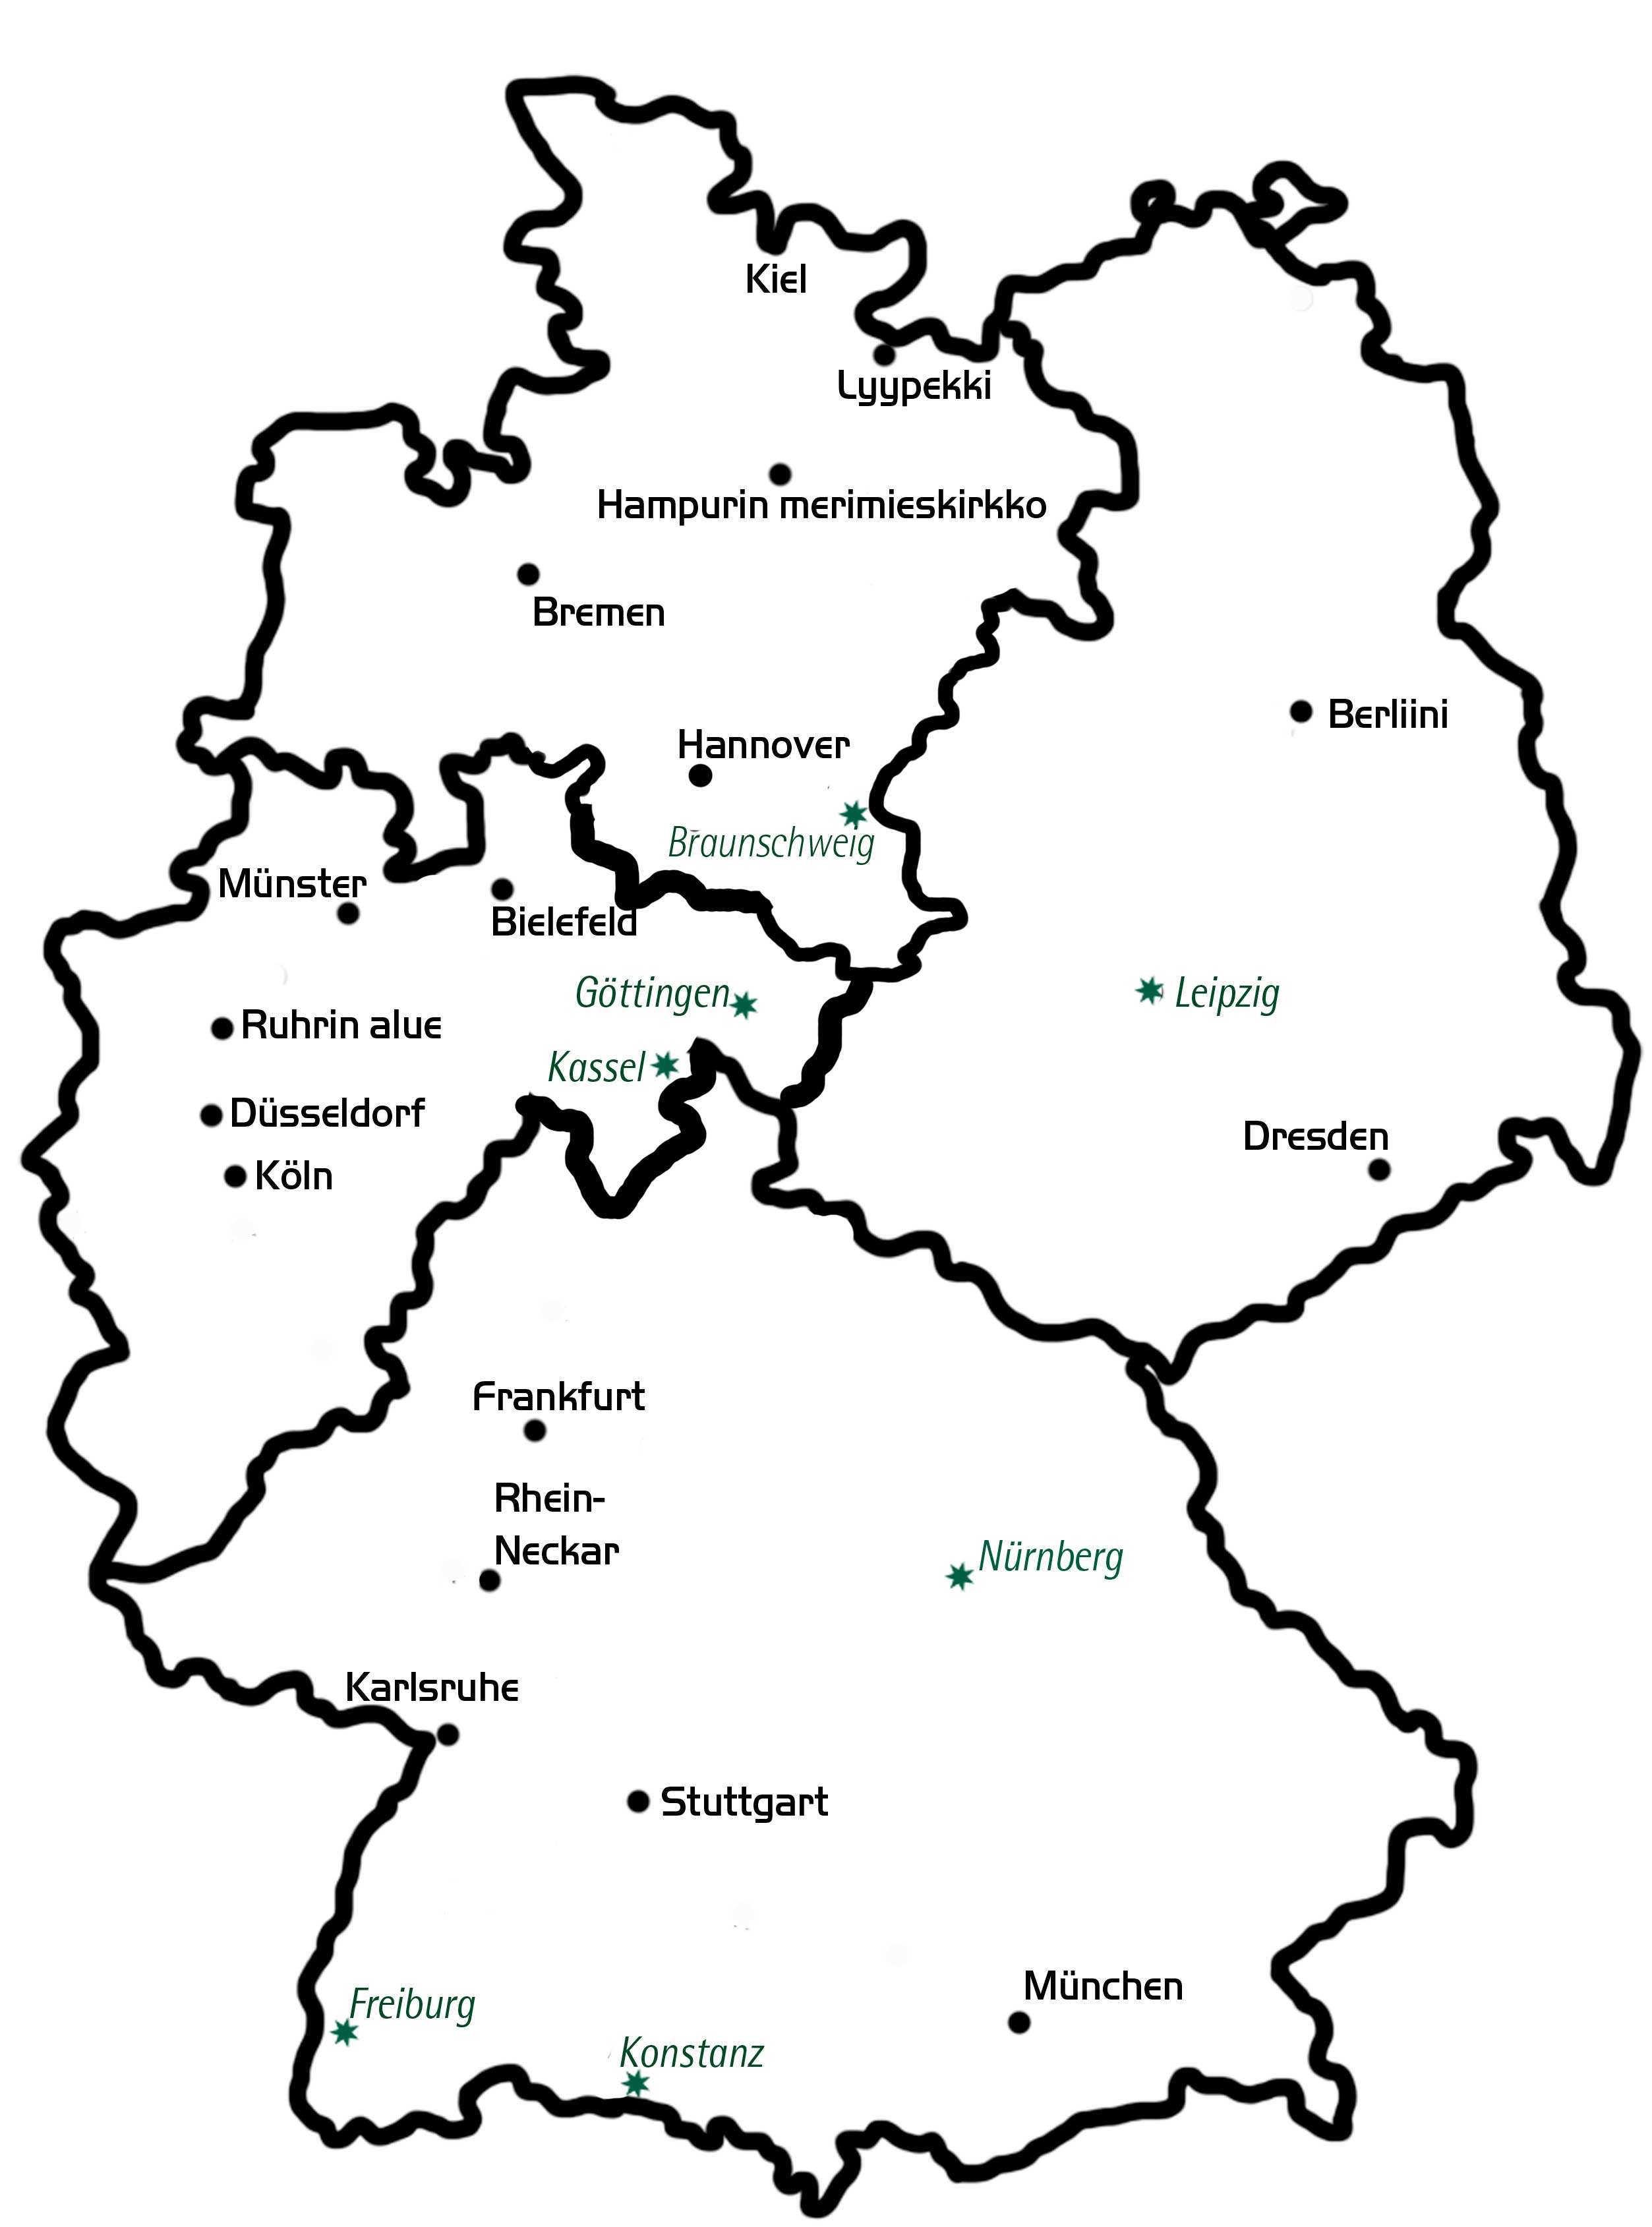 Saksan kartta, johon merkitty suomalaiset seurakunnat ja jumalanpalveluspaikat